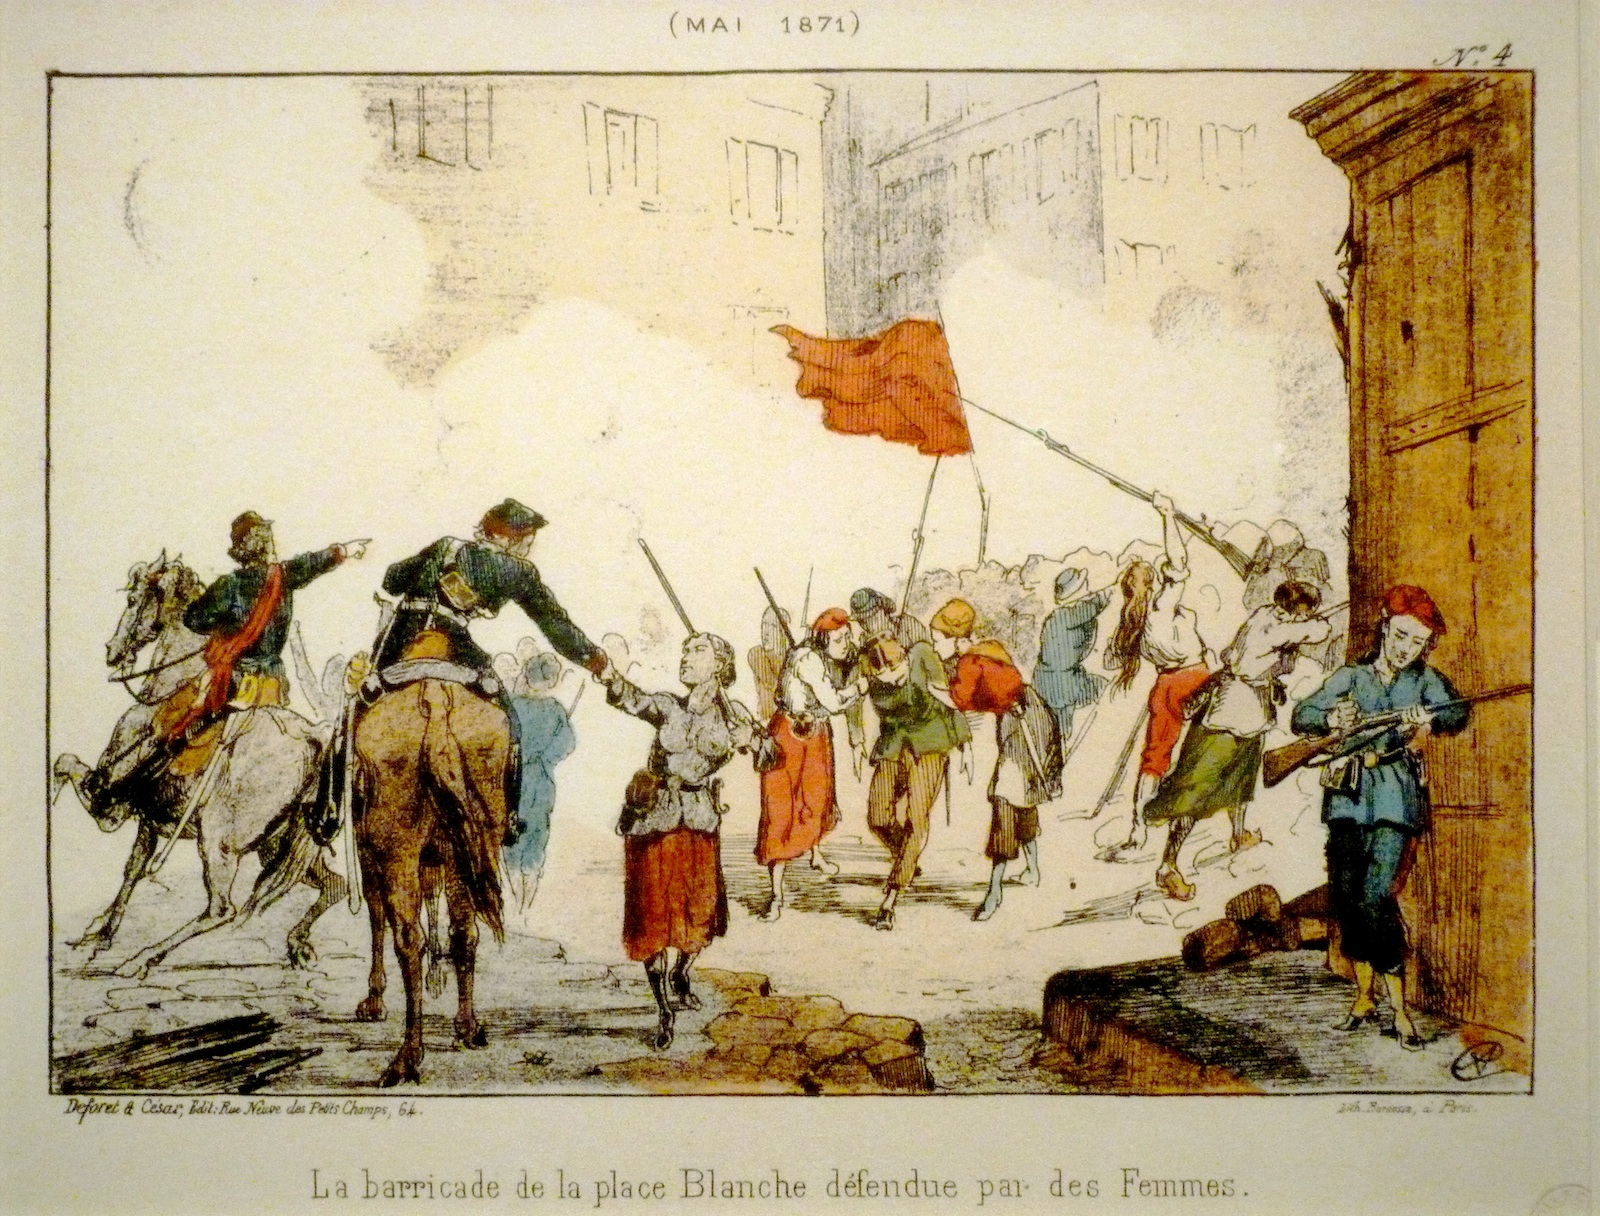 La barricade de la place Blanche, dÃ©fendue par les femmes en mai 1871.